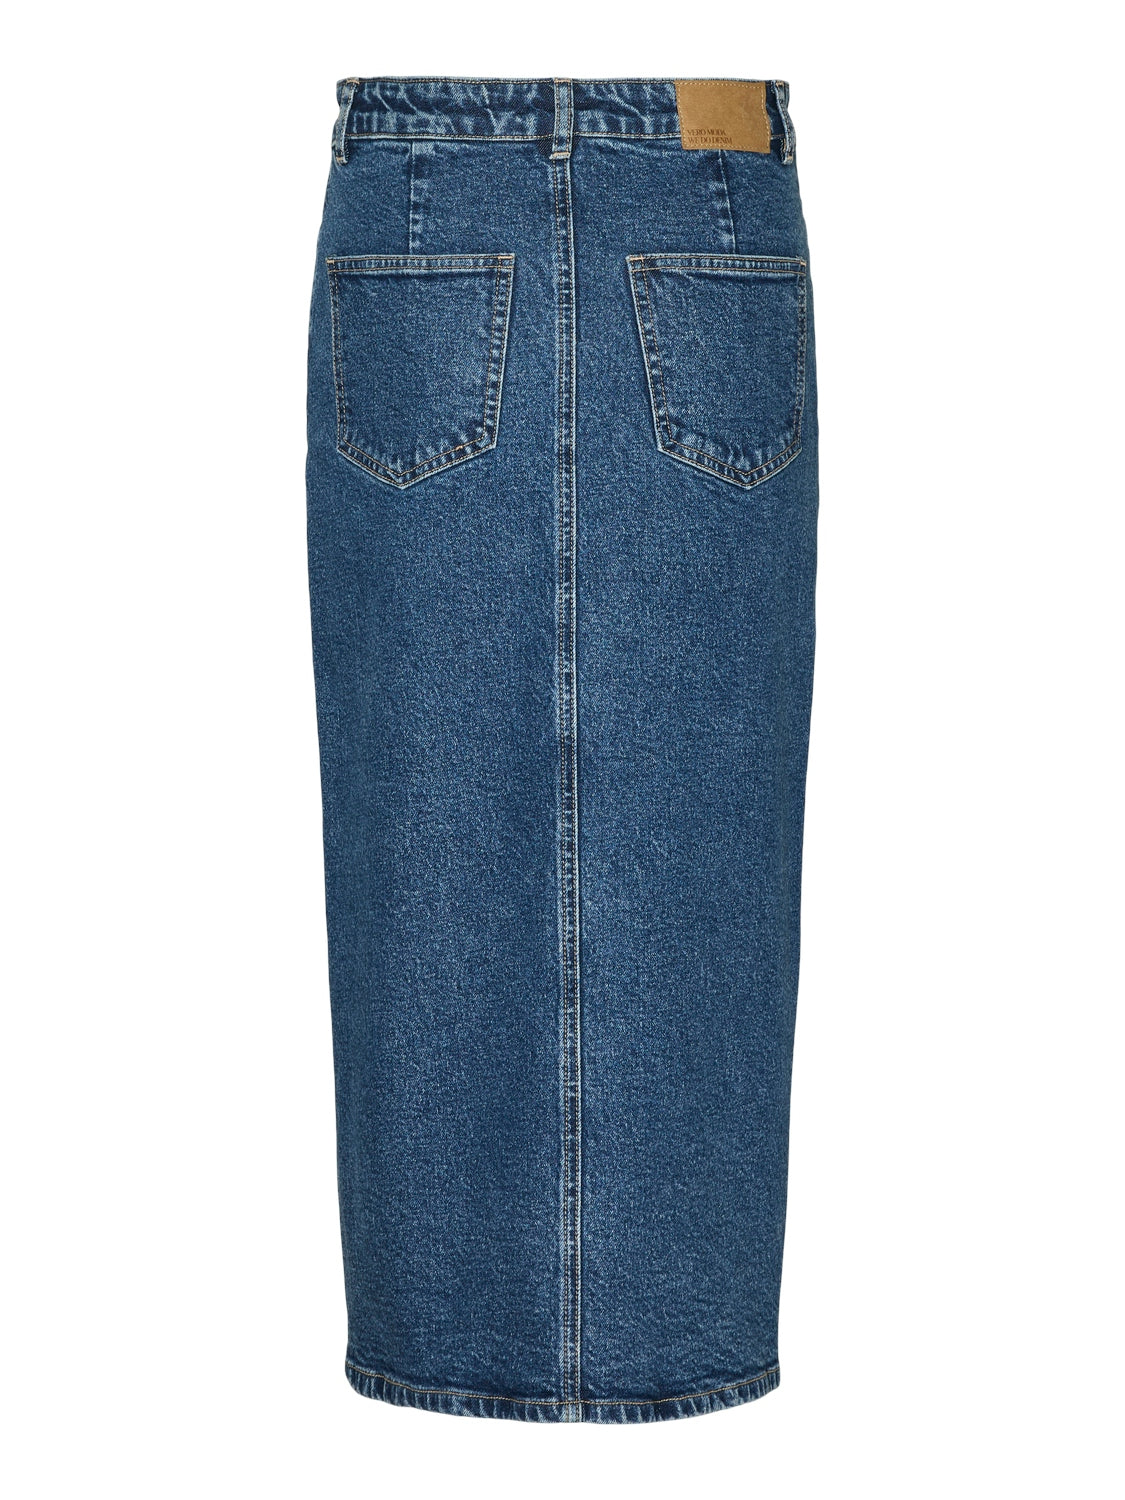 Veri Calf Denim Skirt - Medium Blue